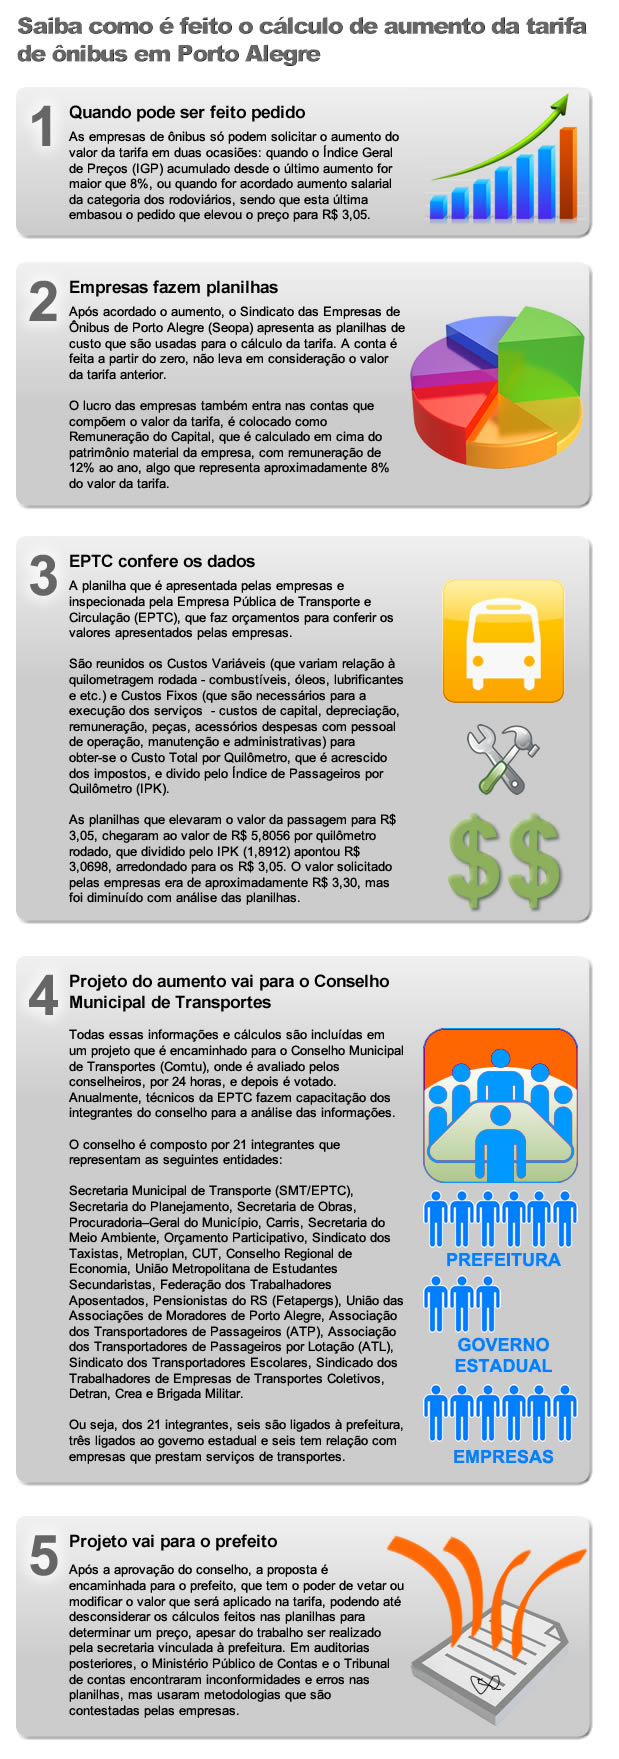 Saiba como é feito o cálculo de aumento da tarifa de ônibus em Porto Alegre